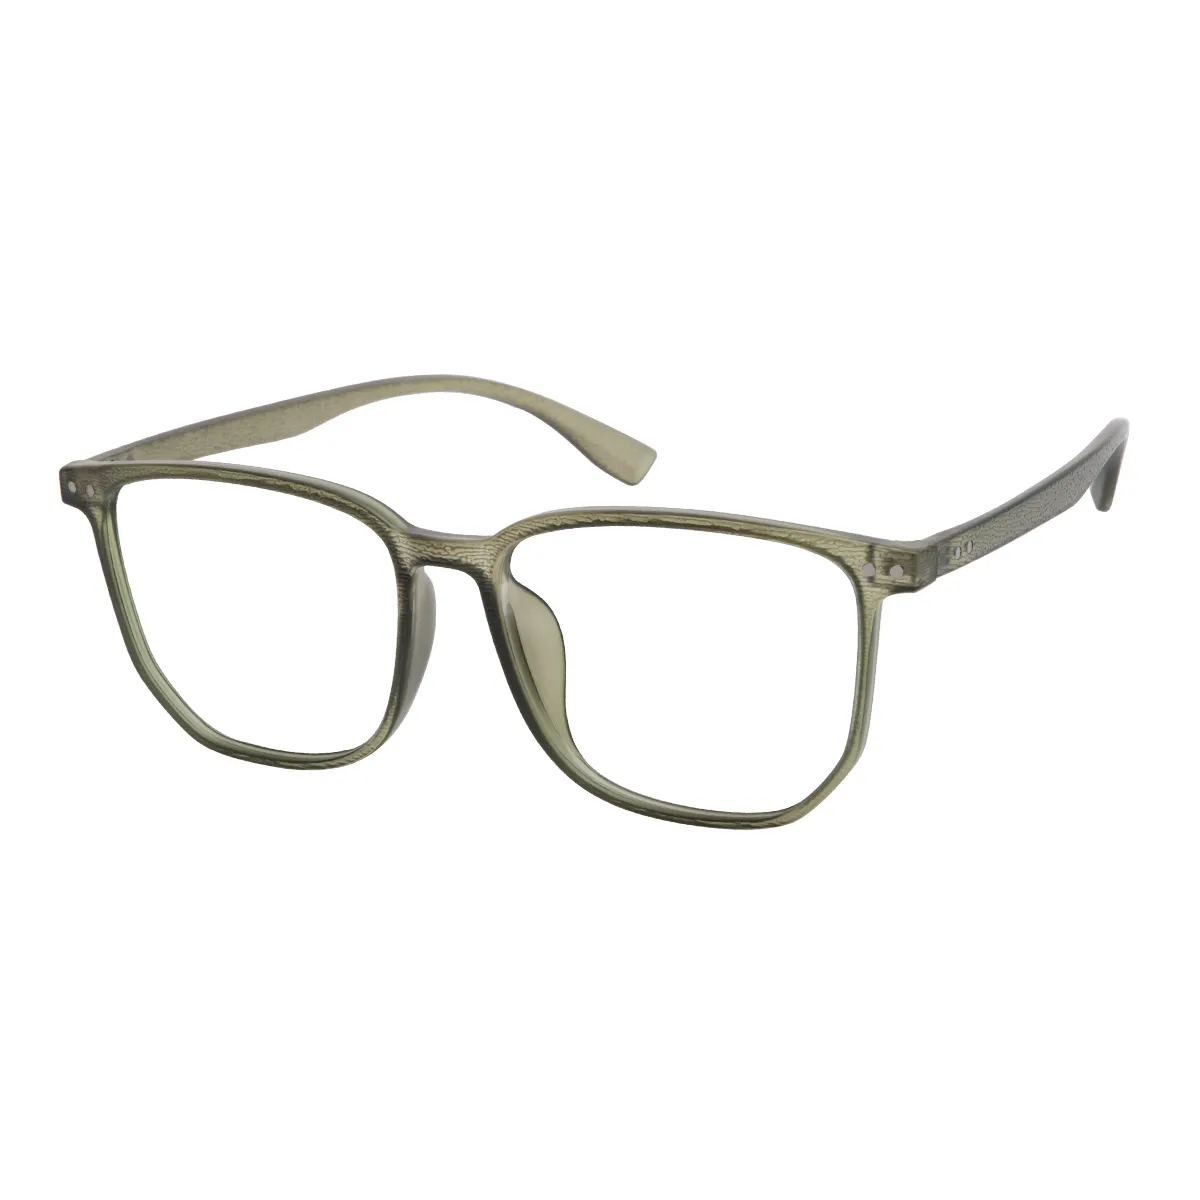 Vega - Square Green Glasses for Men & Women